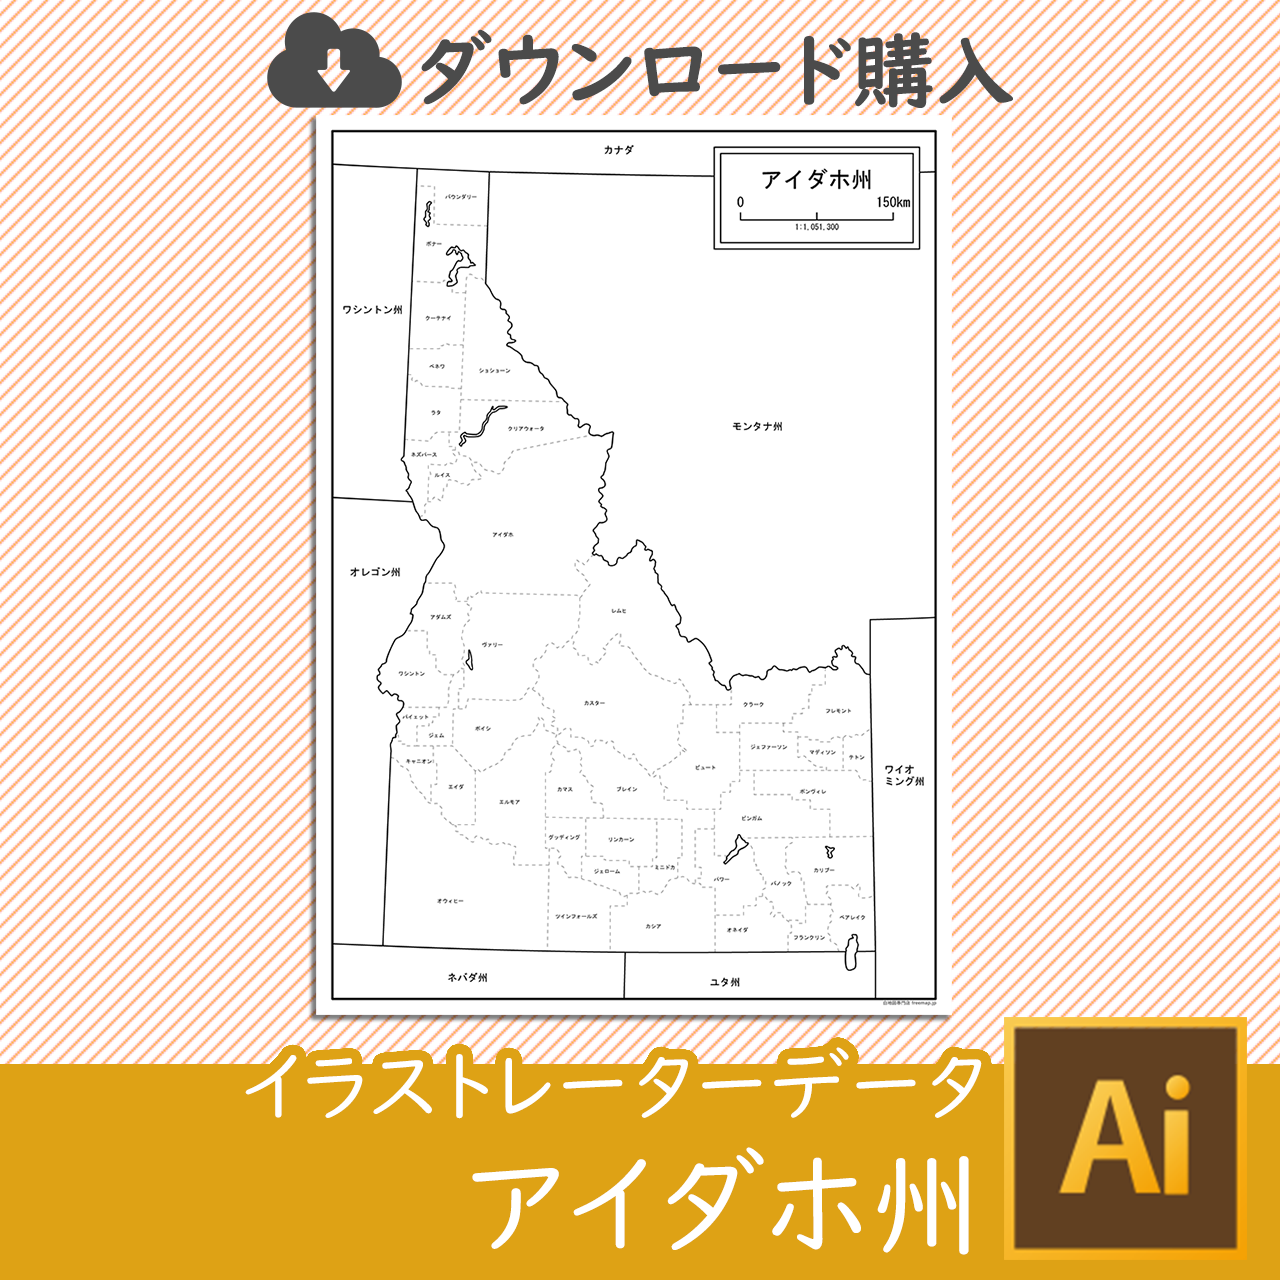 アイダホ州のaiデータのサムネイル画像